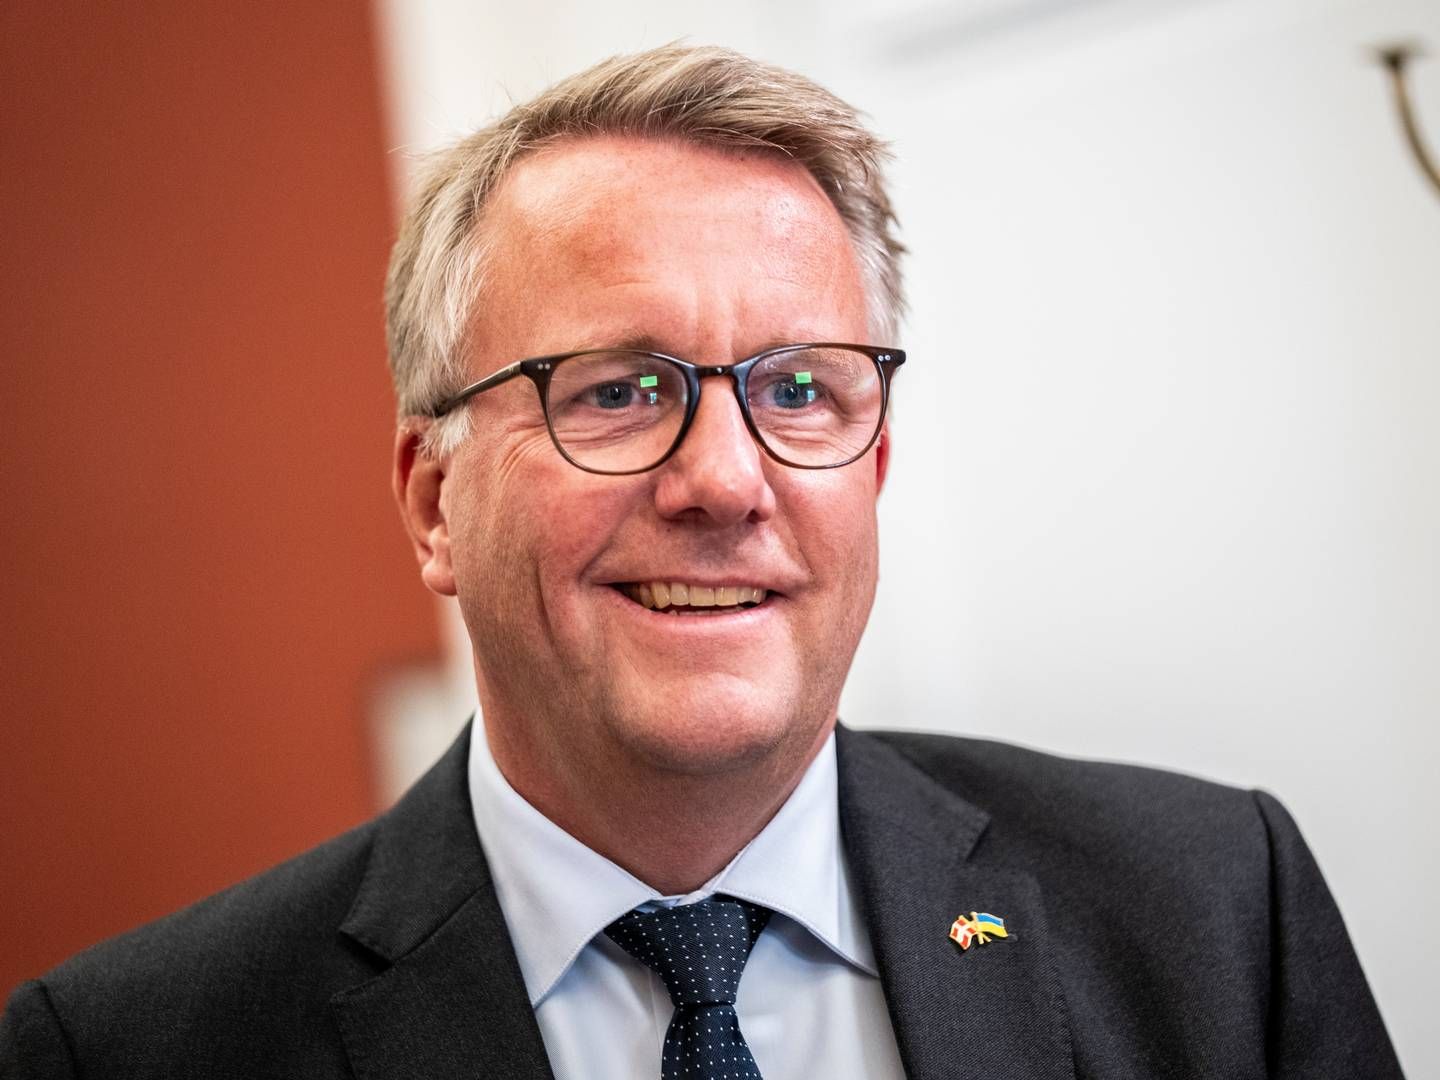 ”Danmark skal være et iværksætterland i verdensklasse,” sagde erhvervsminister Morten Bødskov (S), da han præsenterede de 46 initiativer ved et pressemøde. | Foto: Ida Marie Odgaard/Ritzau Scanpix